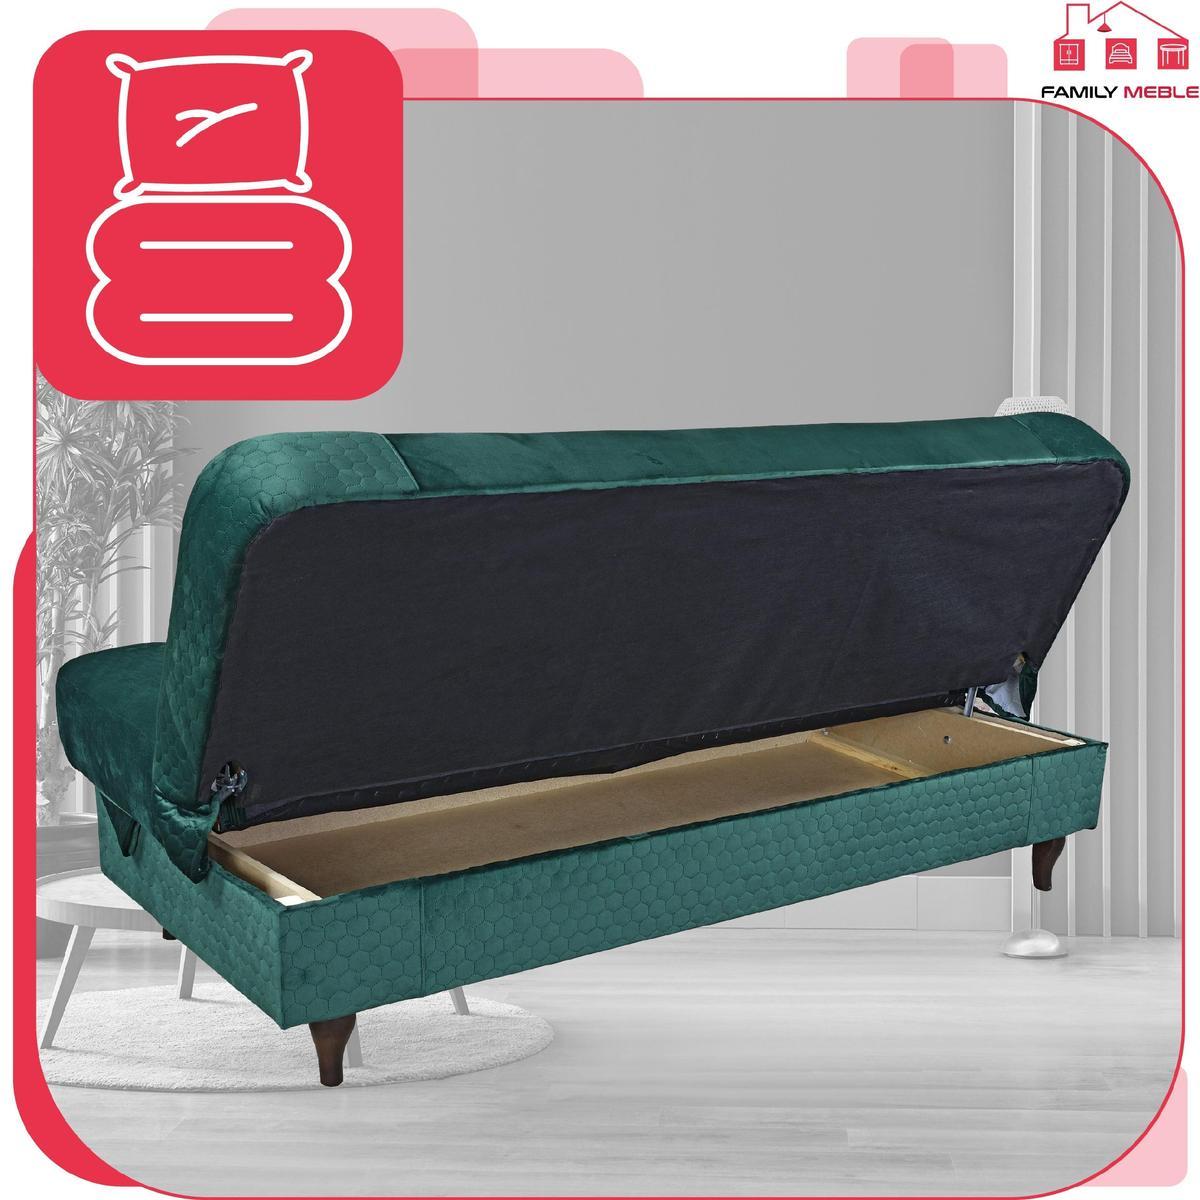 Wersalka sofa kanapa rozkładana Iza Family Meble nr. 6